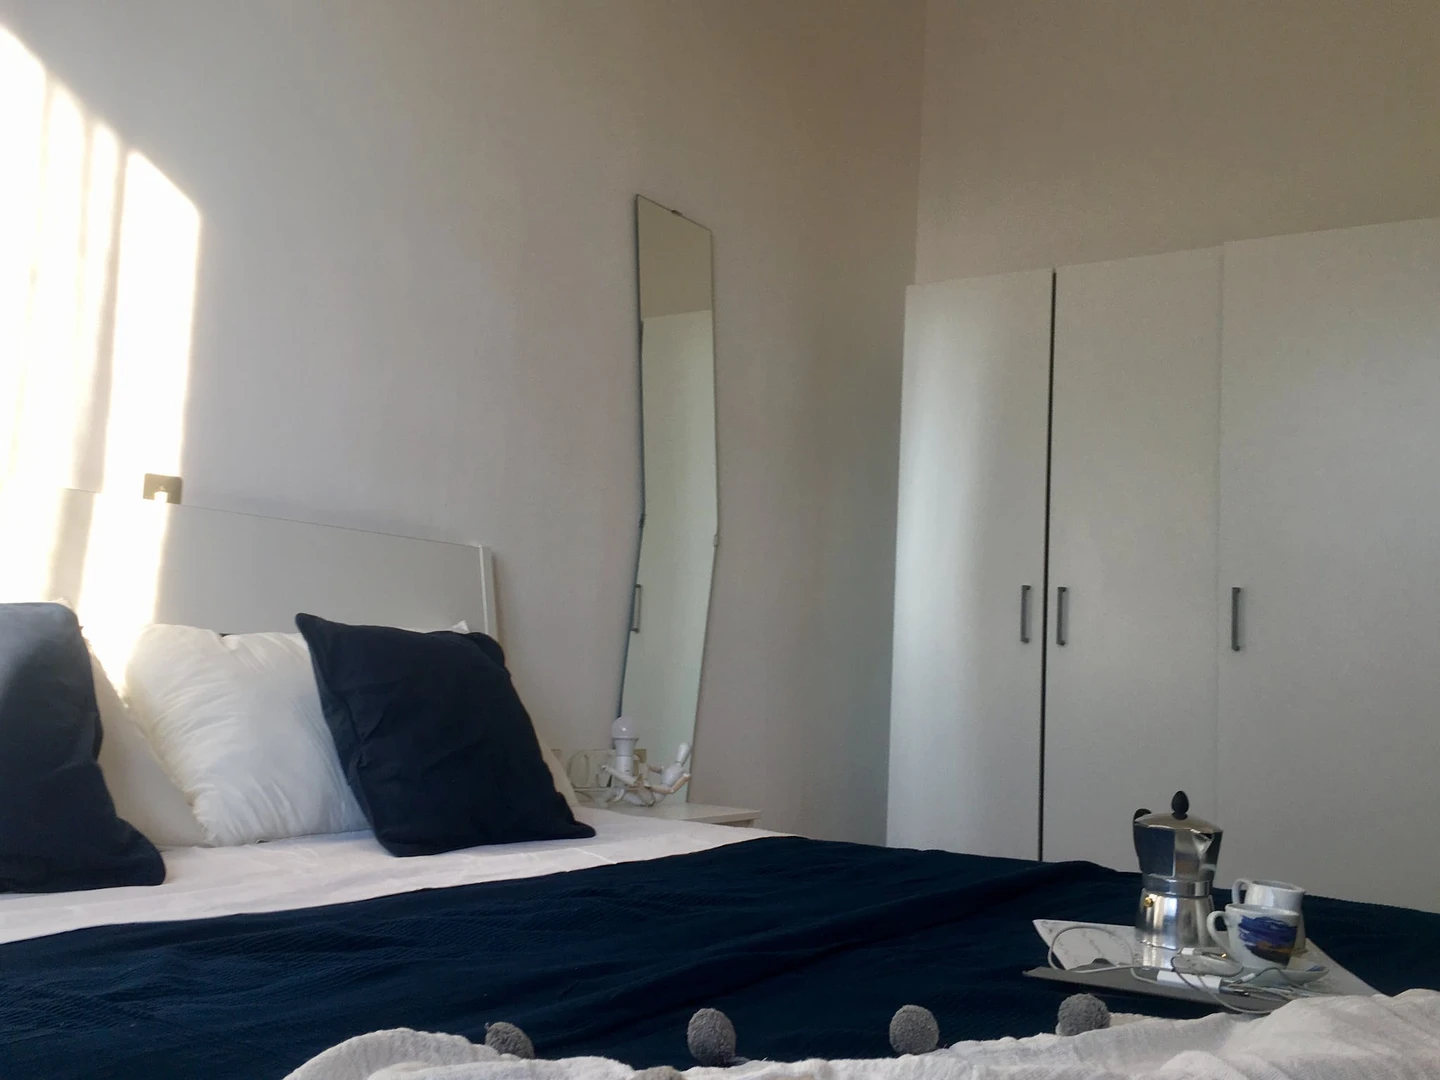 Pokój do wynajęcia z podwójnym łóżkiem w Bergamo